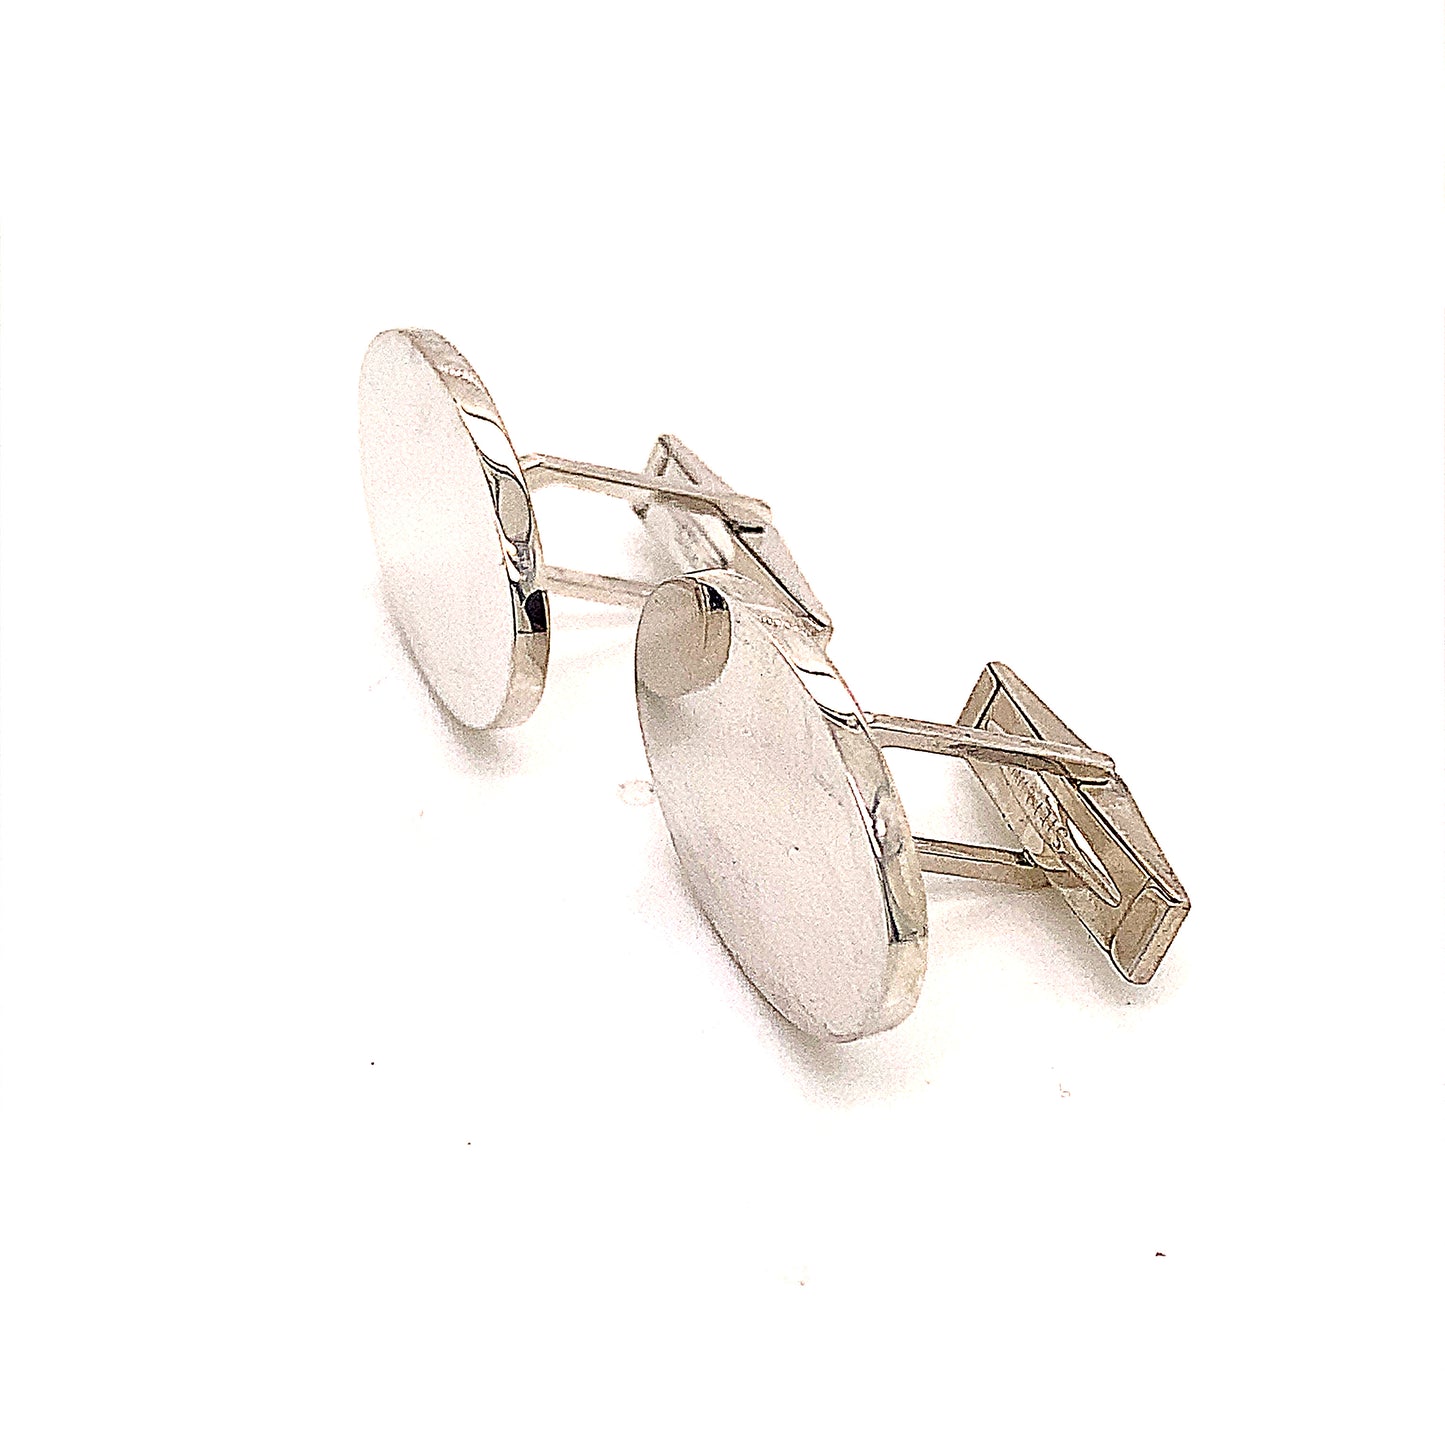 Tiffany & Co Estate Sterling Silver Wide Oval Cufflinks 19 Grams TIF142 - Certified Fine Jewelry